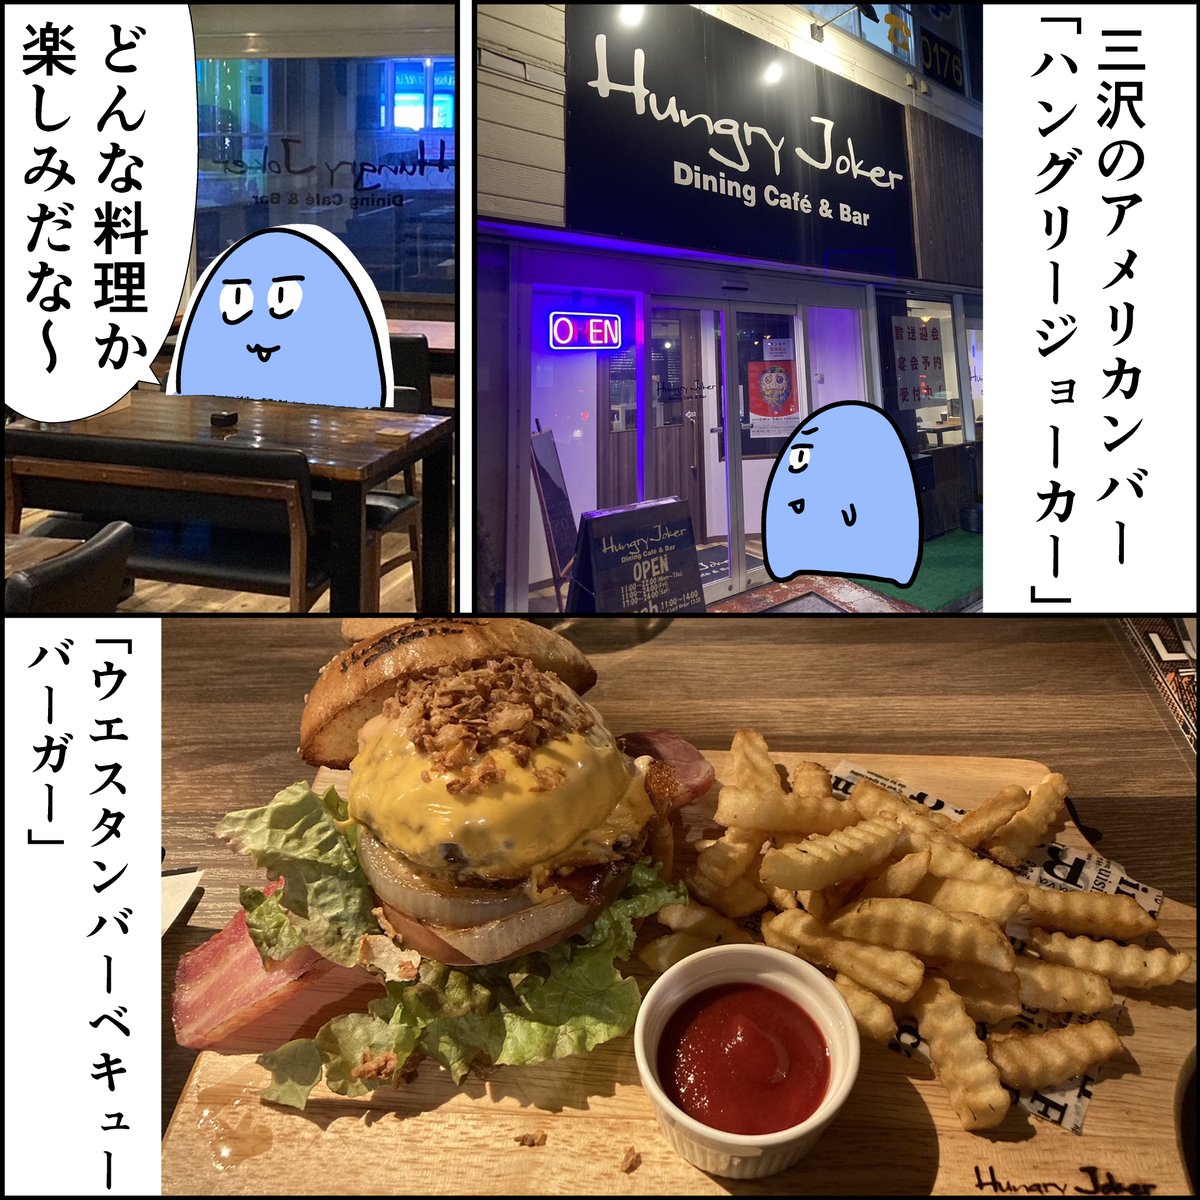 【三沢移住生活マンガ】

アメリカンバー「Hungry Joker」でハンバーガーを食べる。

#三沢 #エッセマンガ 